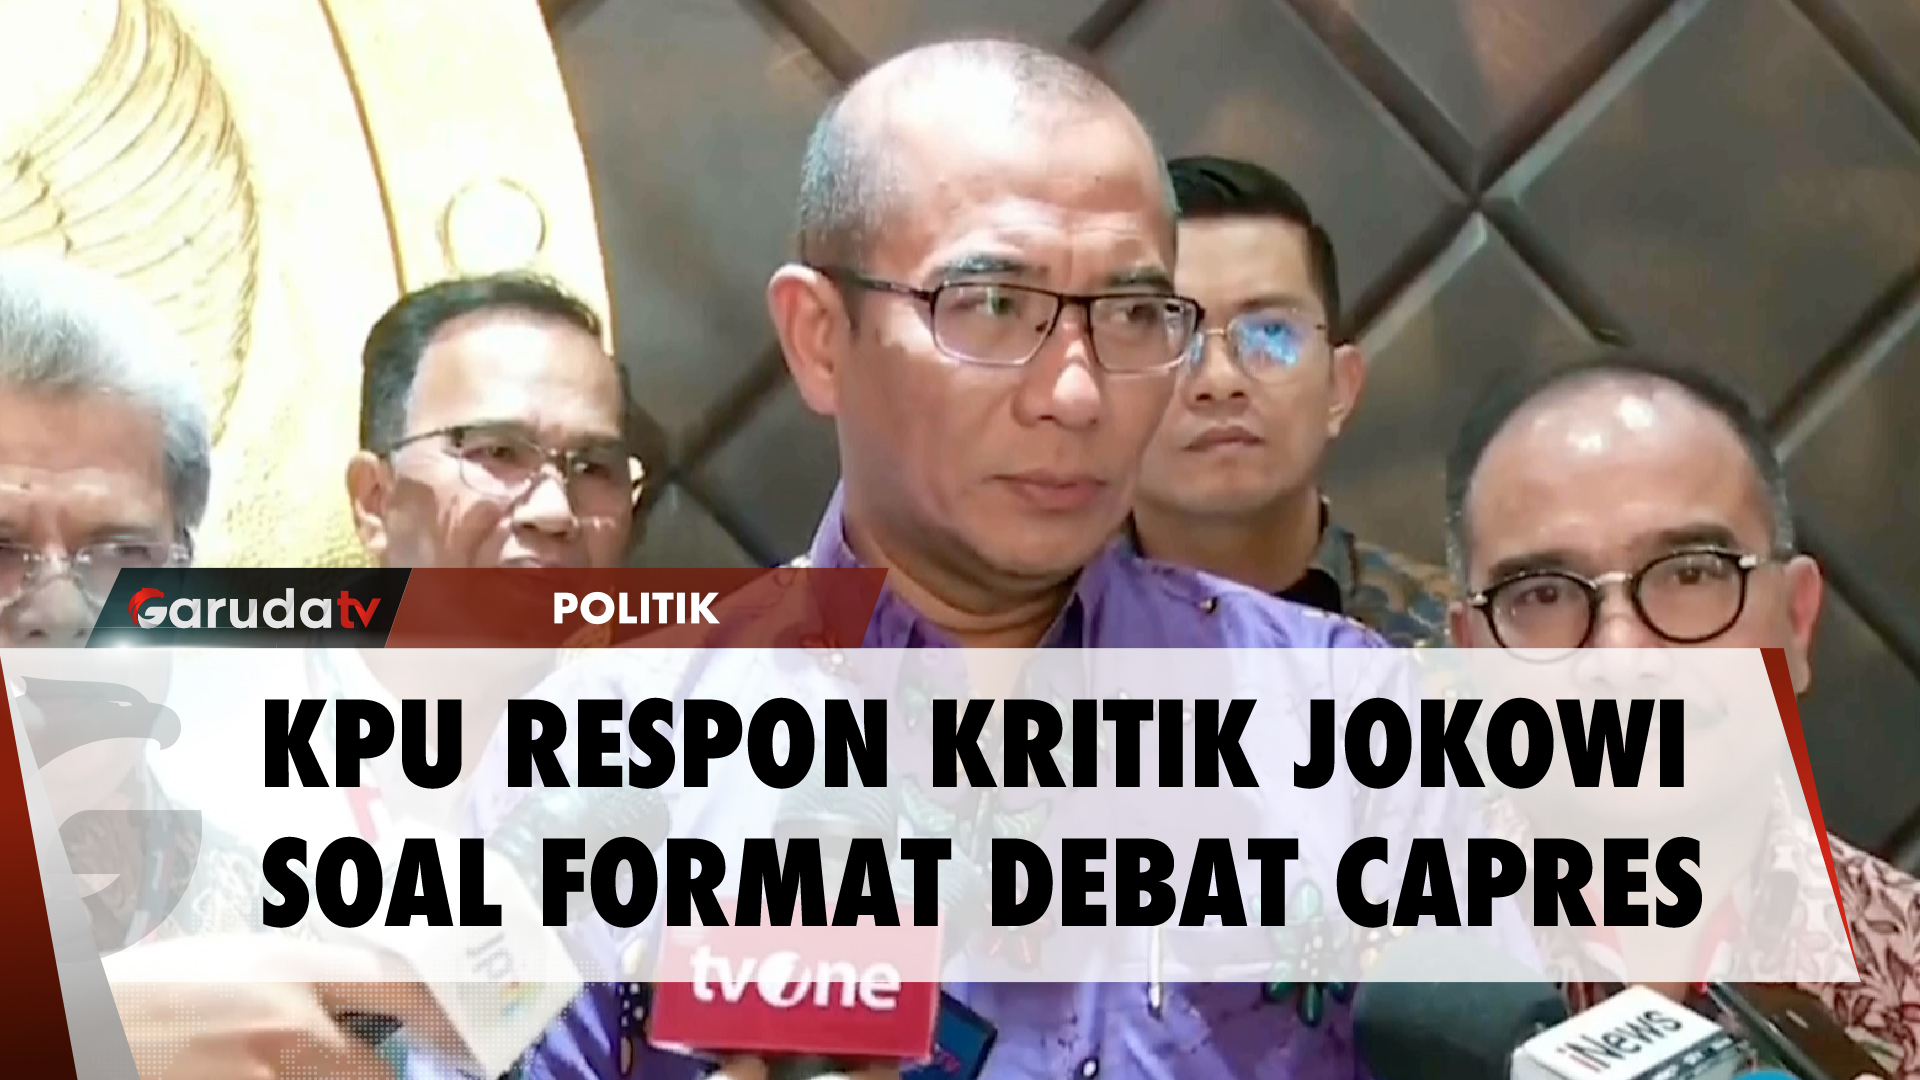 Presiden Jokowi Kritik Format Debat Pilpres Ketiga, Ini Respons KPU.